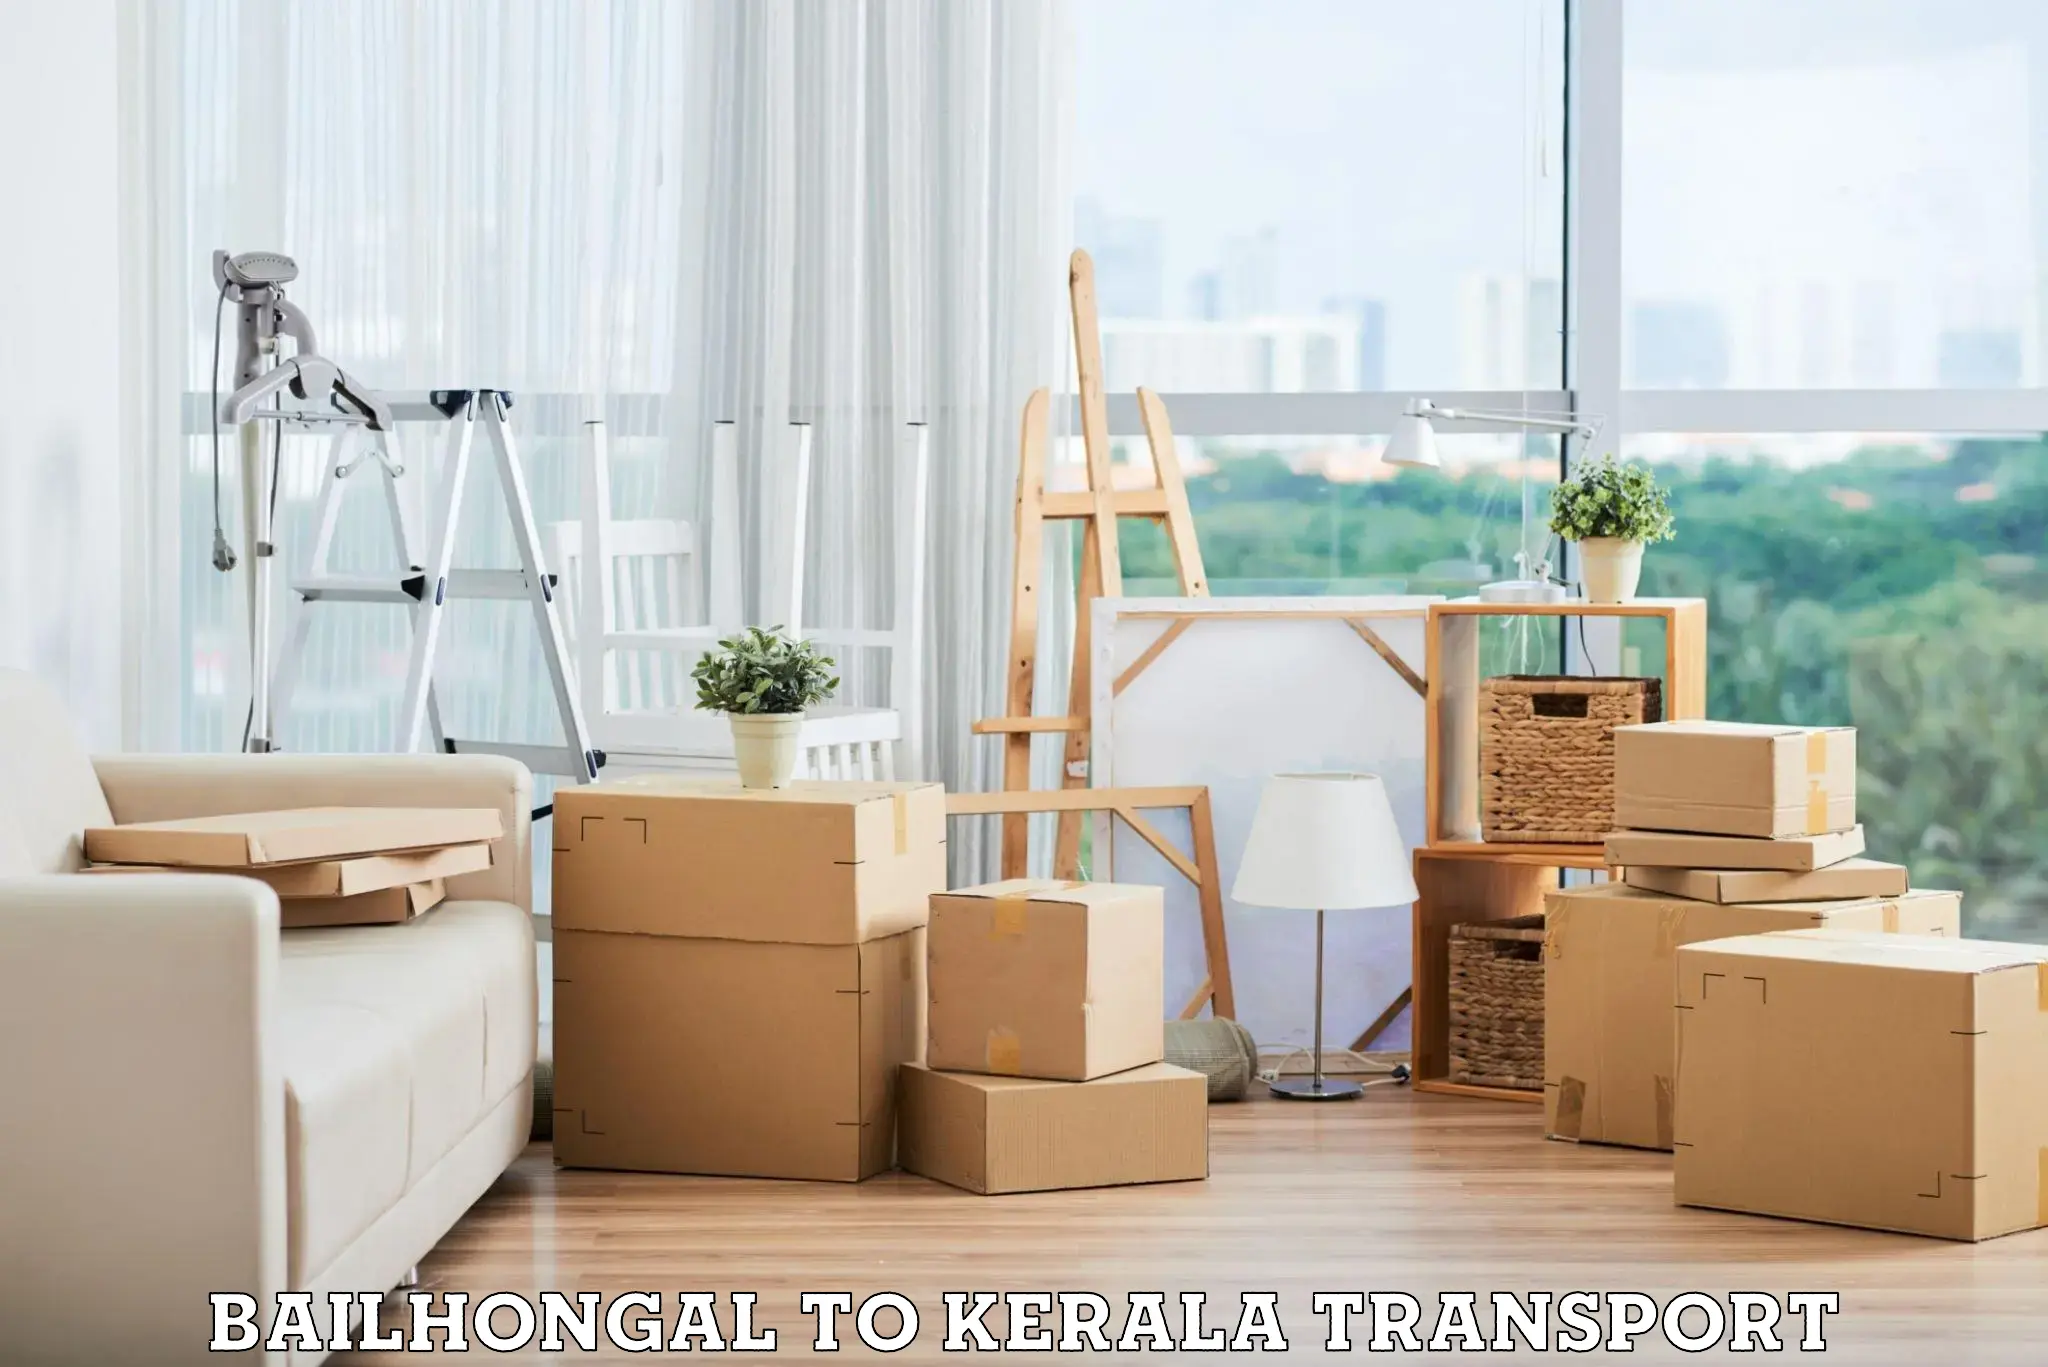 Transport in sharing Bailhongal to Pala